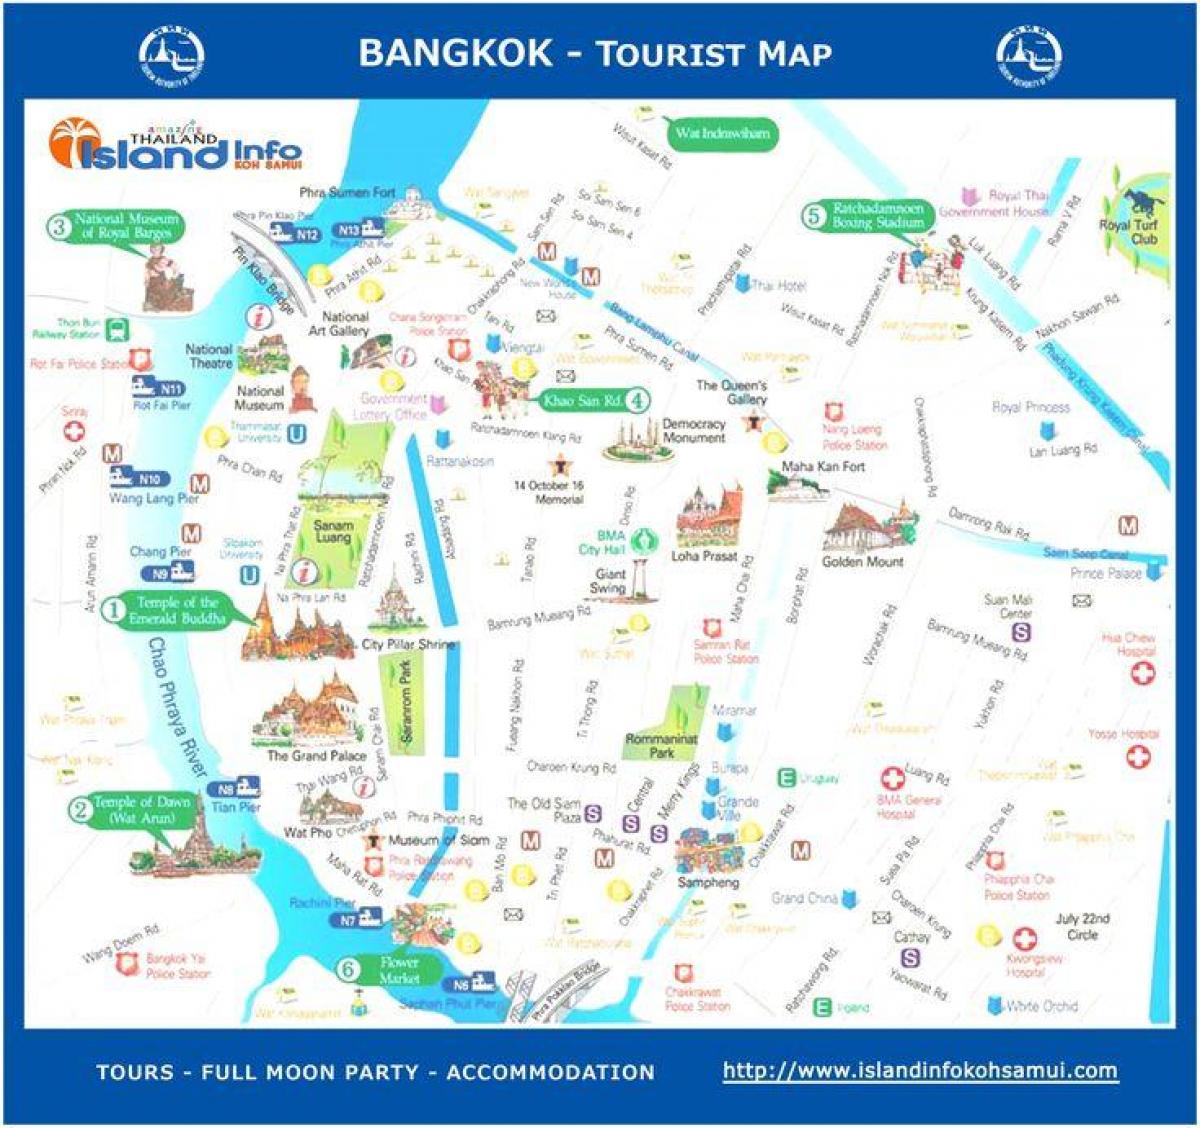 banguecoque, tailândia mapa turístico